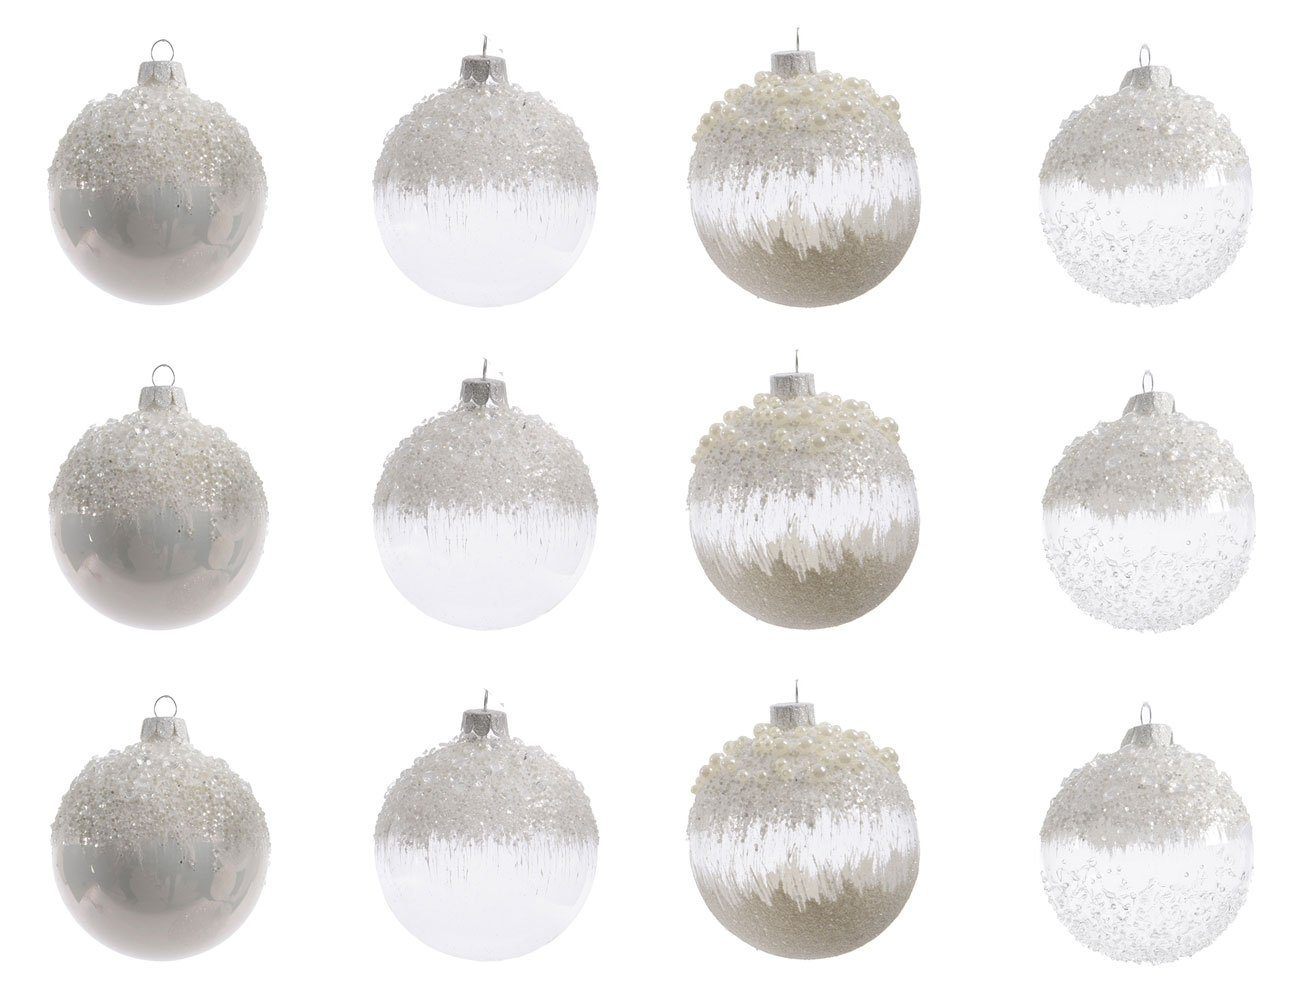 Decoris season decorations Christbaumschmuck, Weihnachtskugeln Glas mit  Glitzer und Perlen 8cm klar / weiß 12er Set